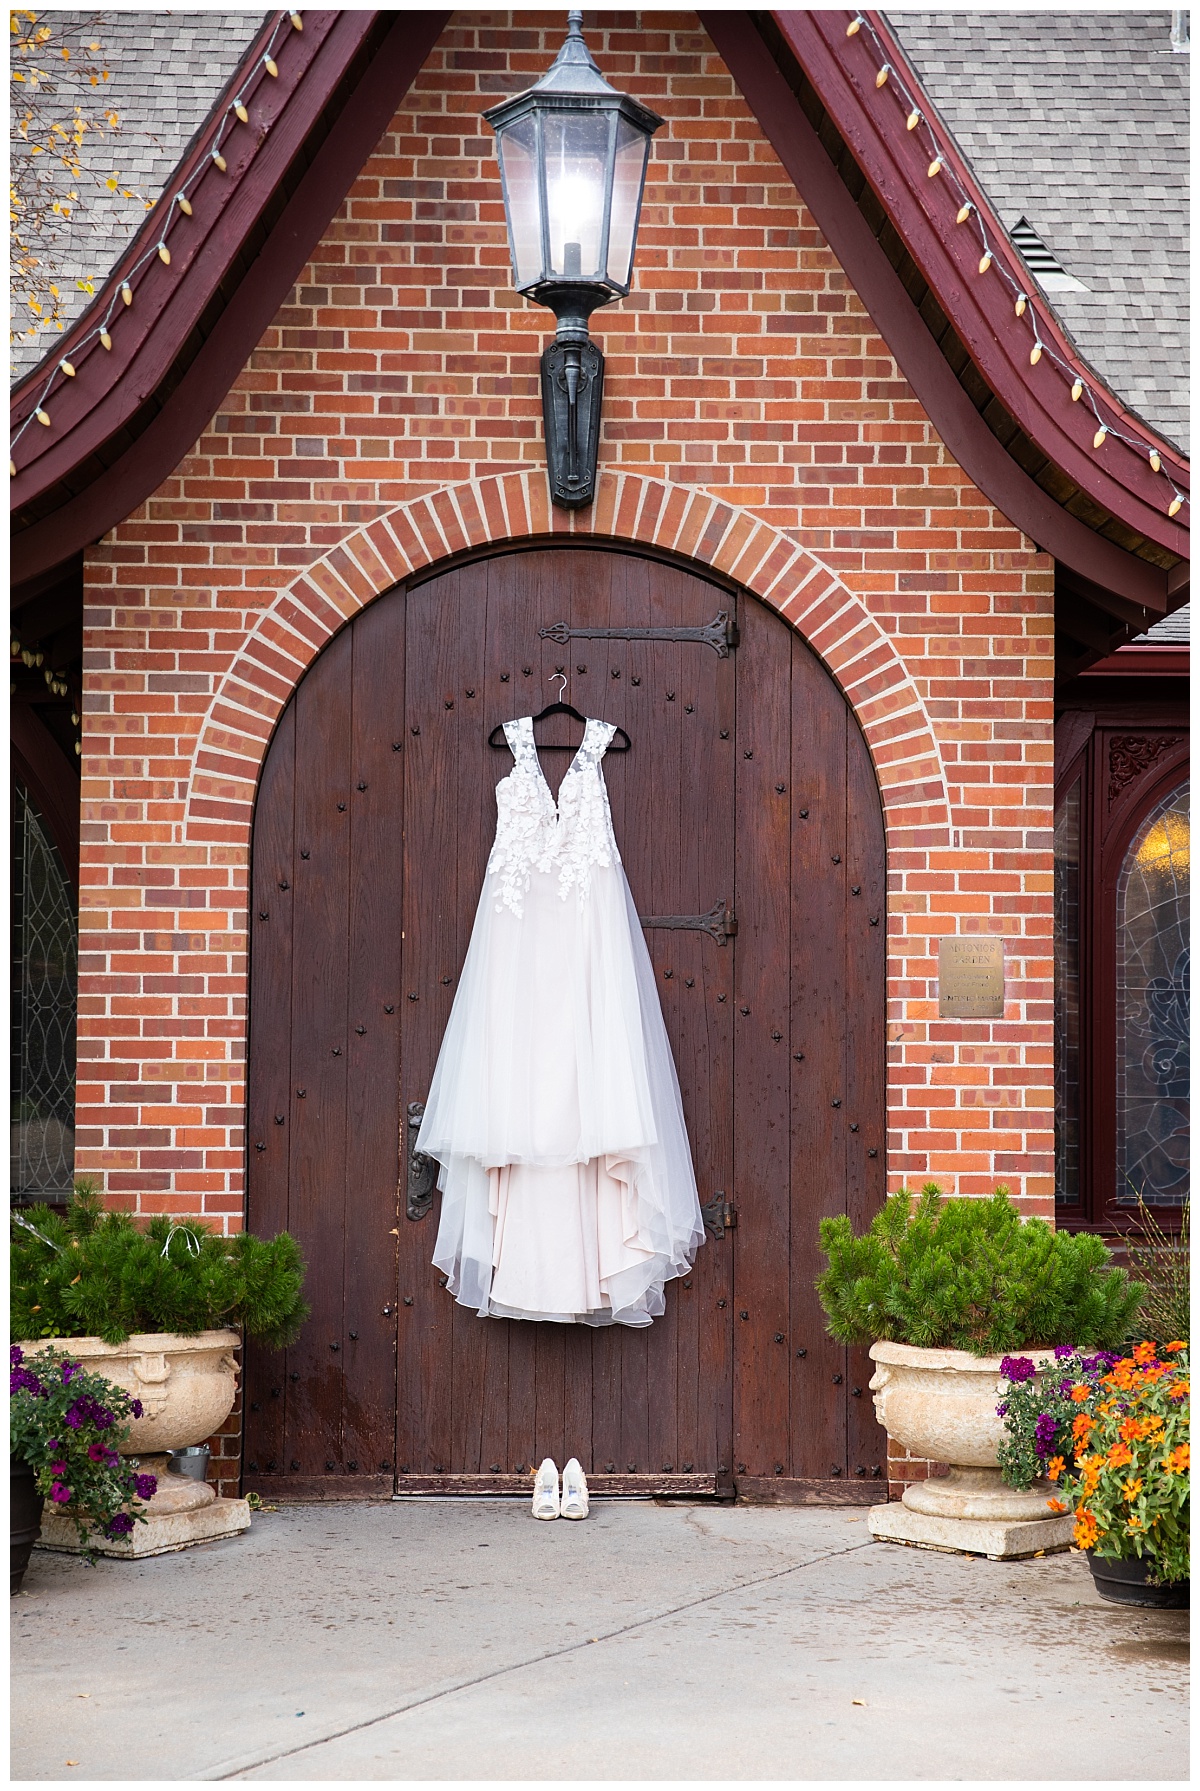 Wellshire event center wedding dress hanging on door